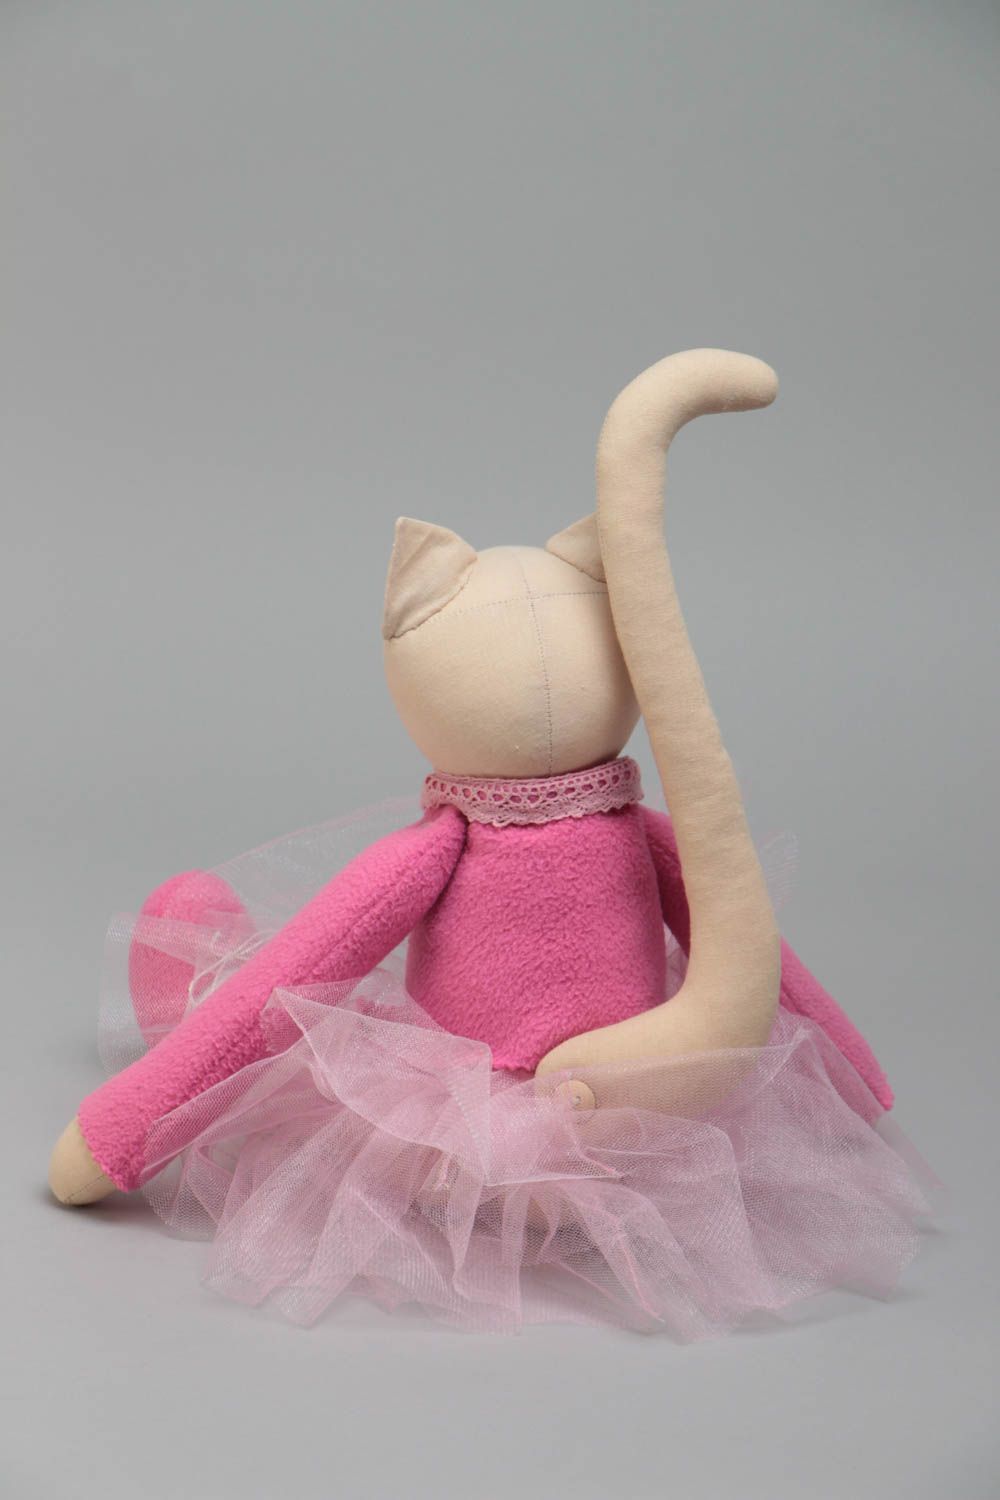 Текстильная кукла кошка из хлопка и флиса ручной работы авторская игрушка хенд мейд фото 4